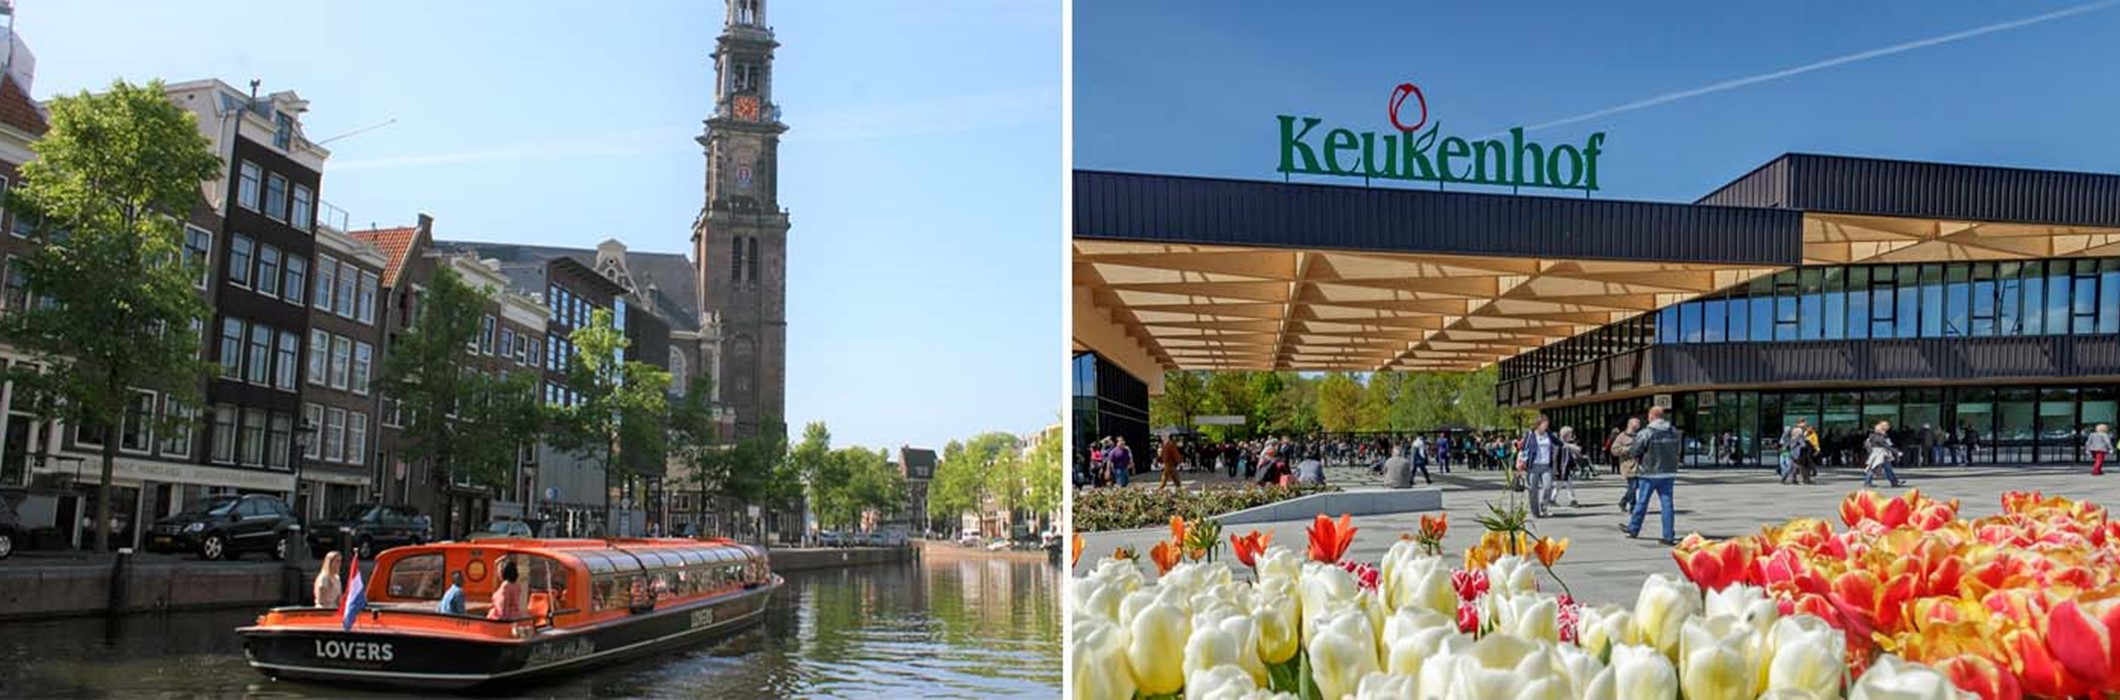 Entrate a Keukenhof + crociera sul canale di Amsterdam